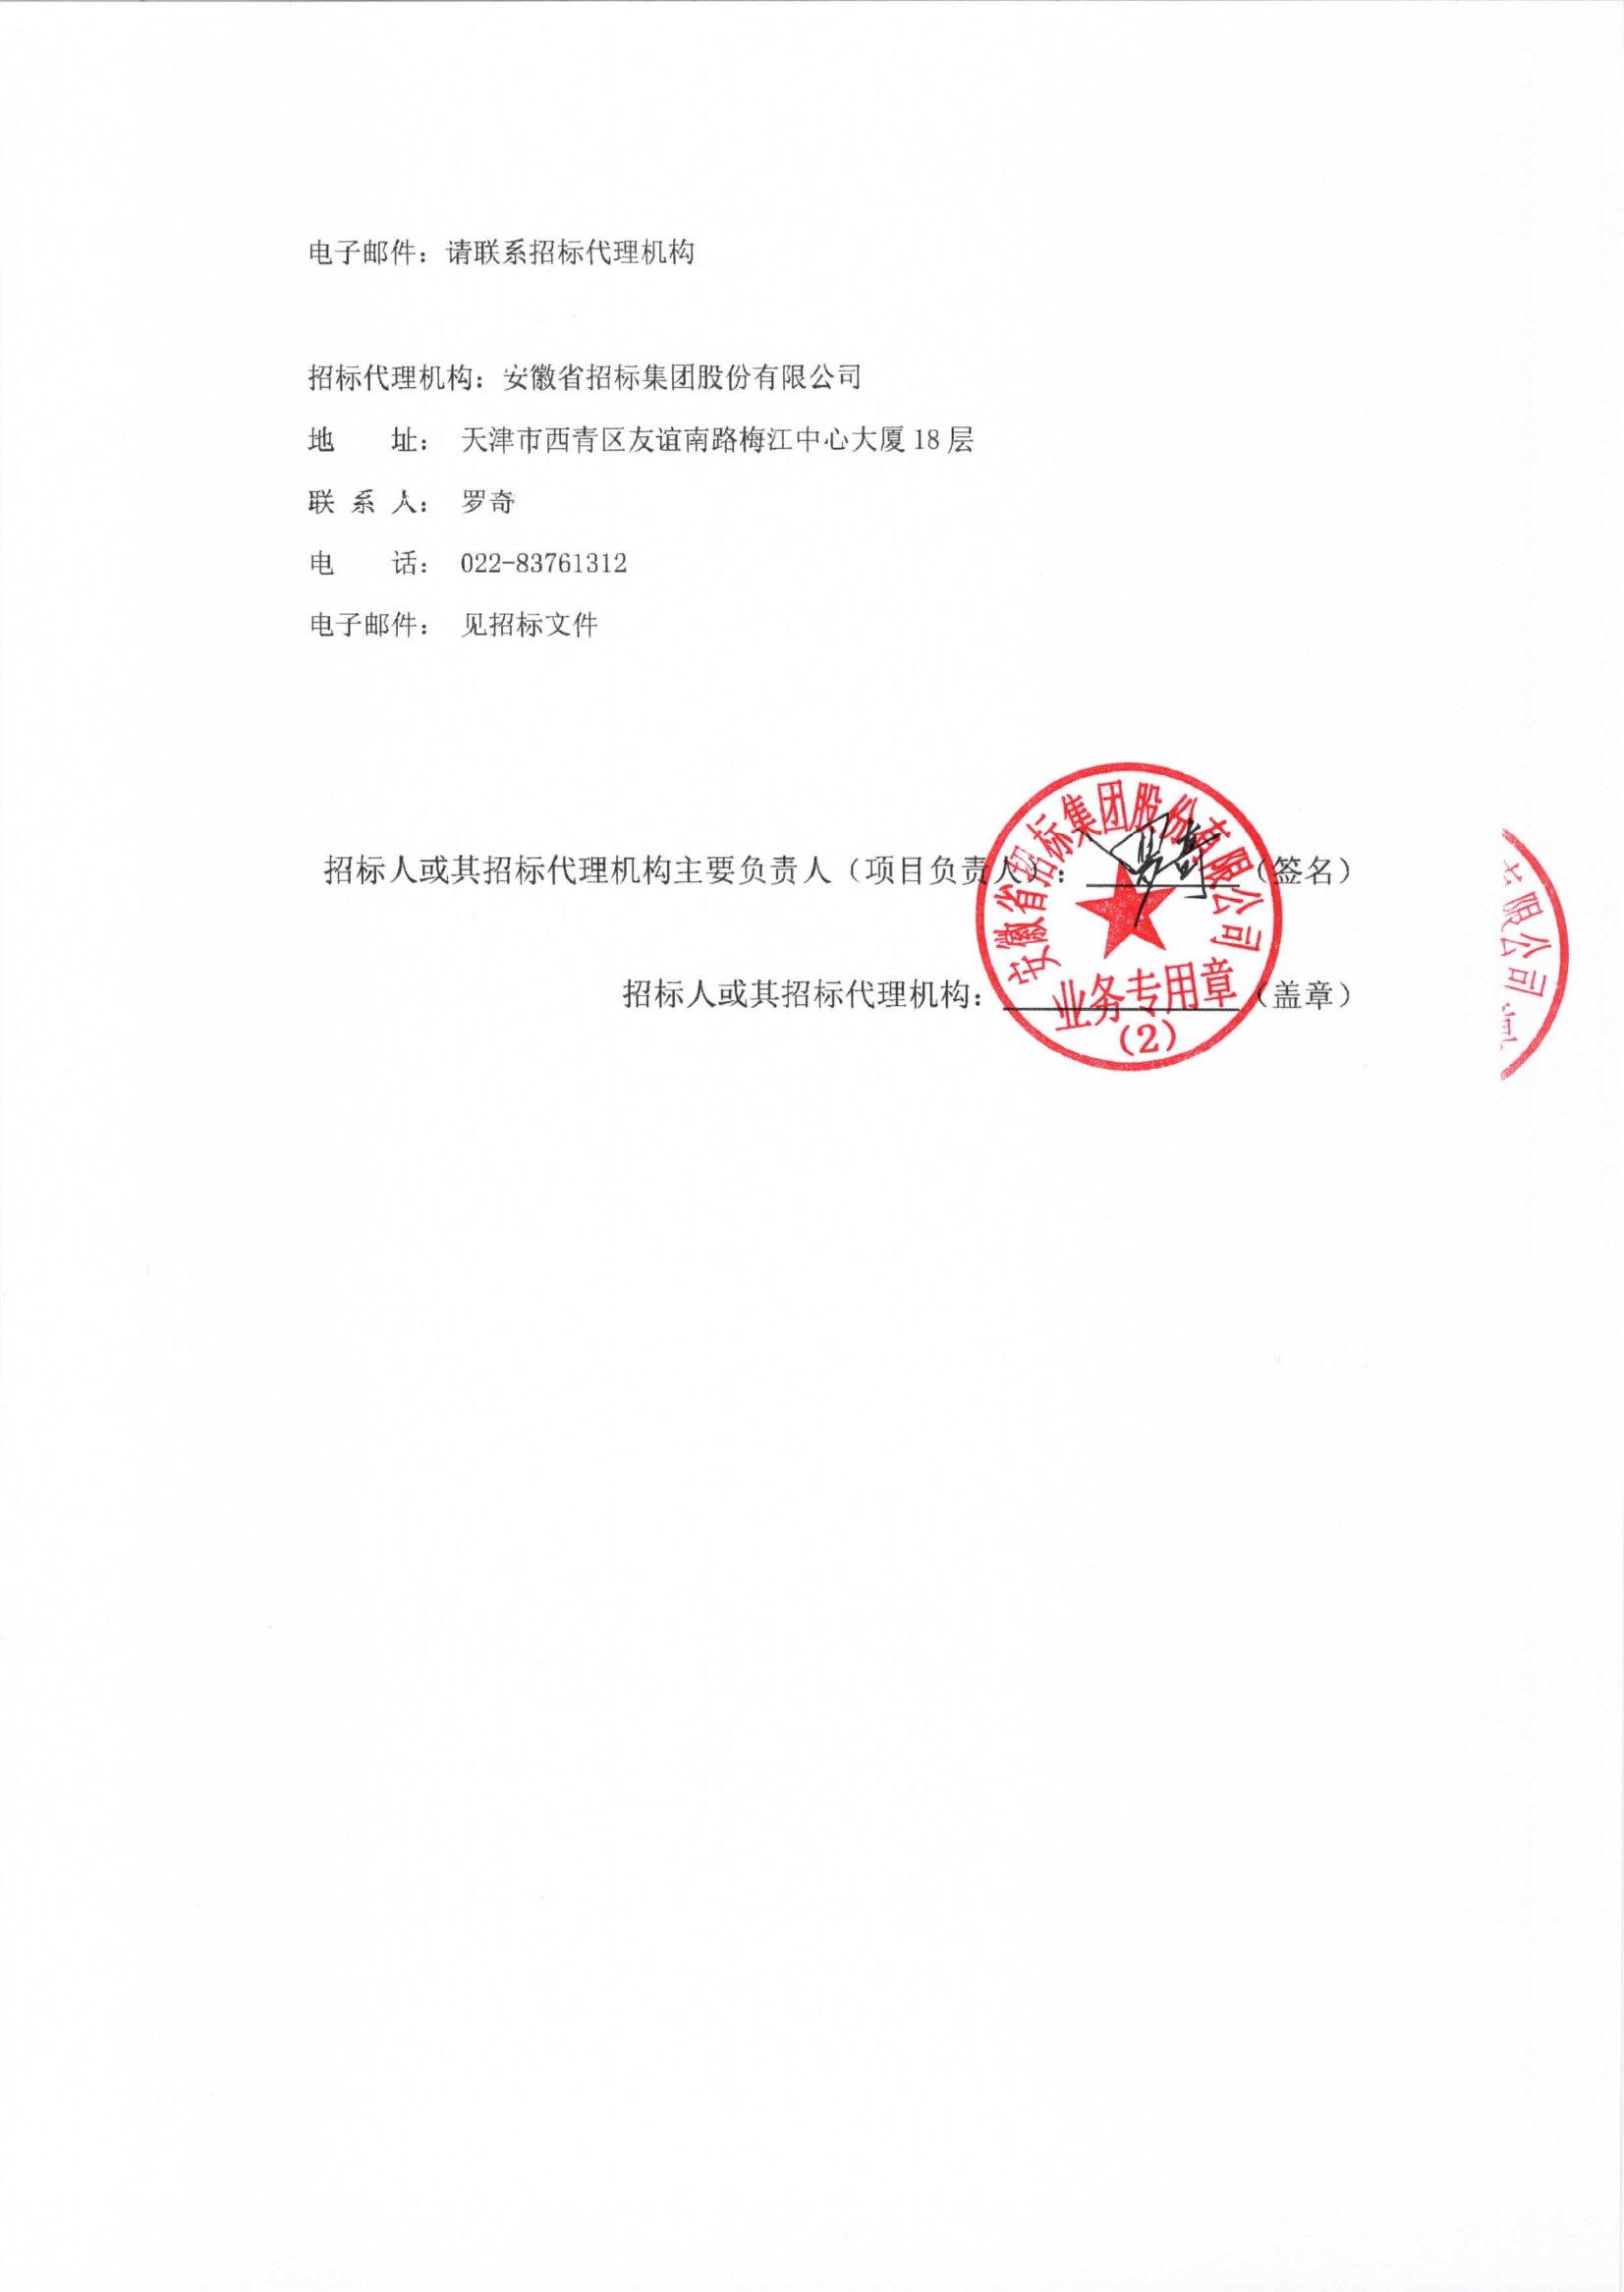 交通银行股份有限公司天津市分行安防交换机采购项目公开招标公告